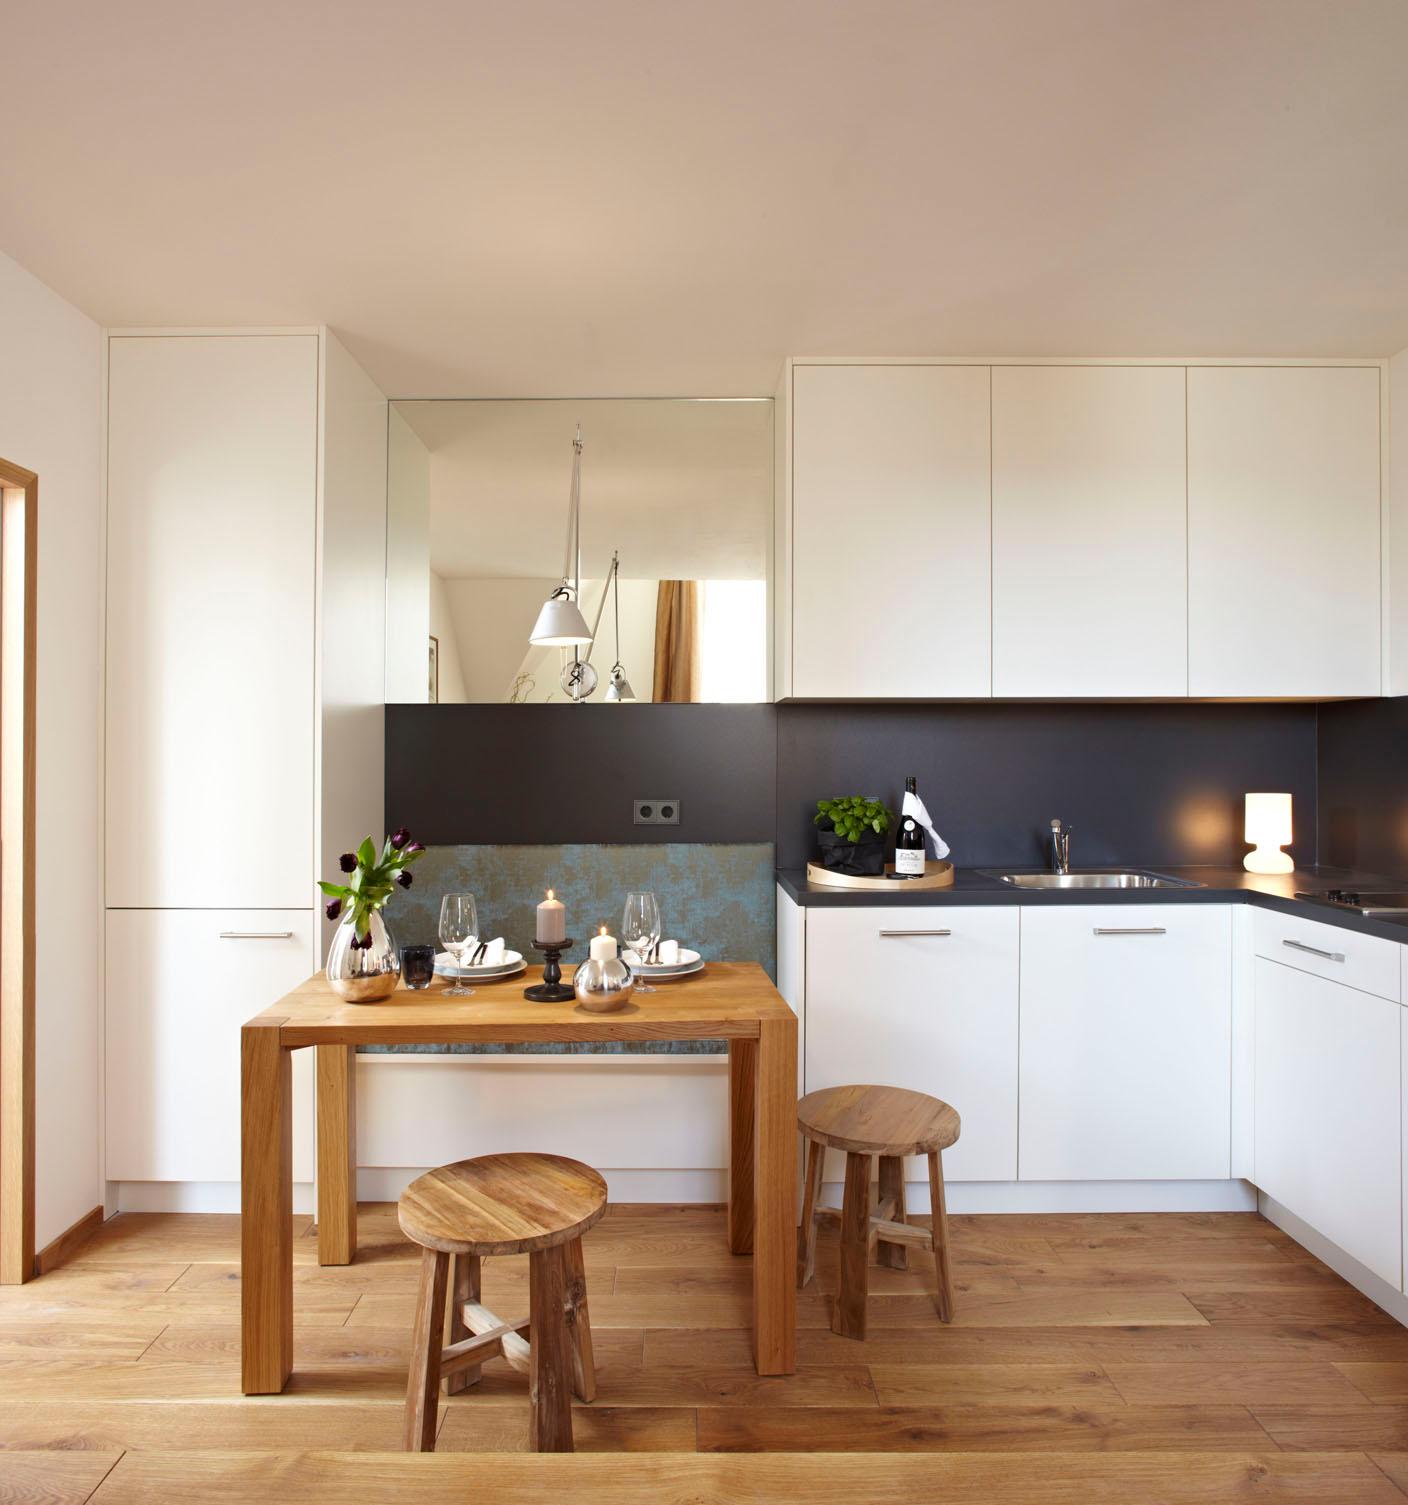 Massgefertigte Küche mit integrierter Sitzbank #spiegel #sitzbank #weißeküche #weißerküchenschrank #tisch #küchenmöbel ©Christian Burmester/Michael König